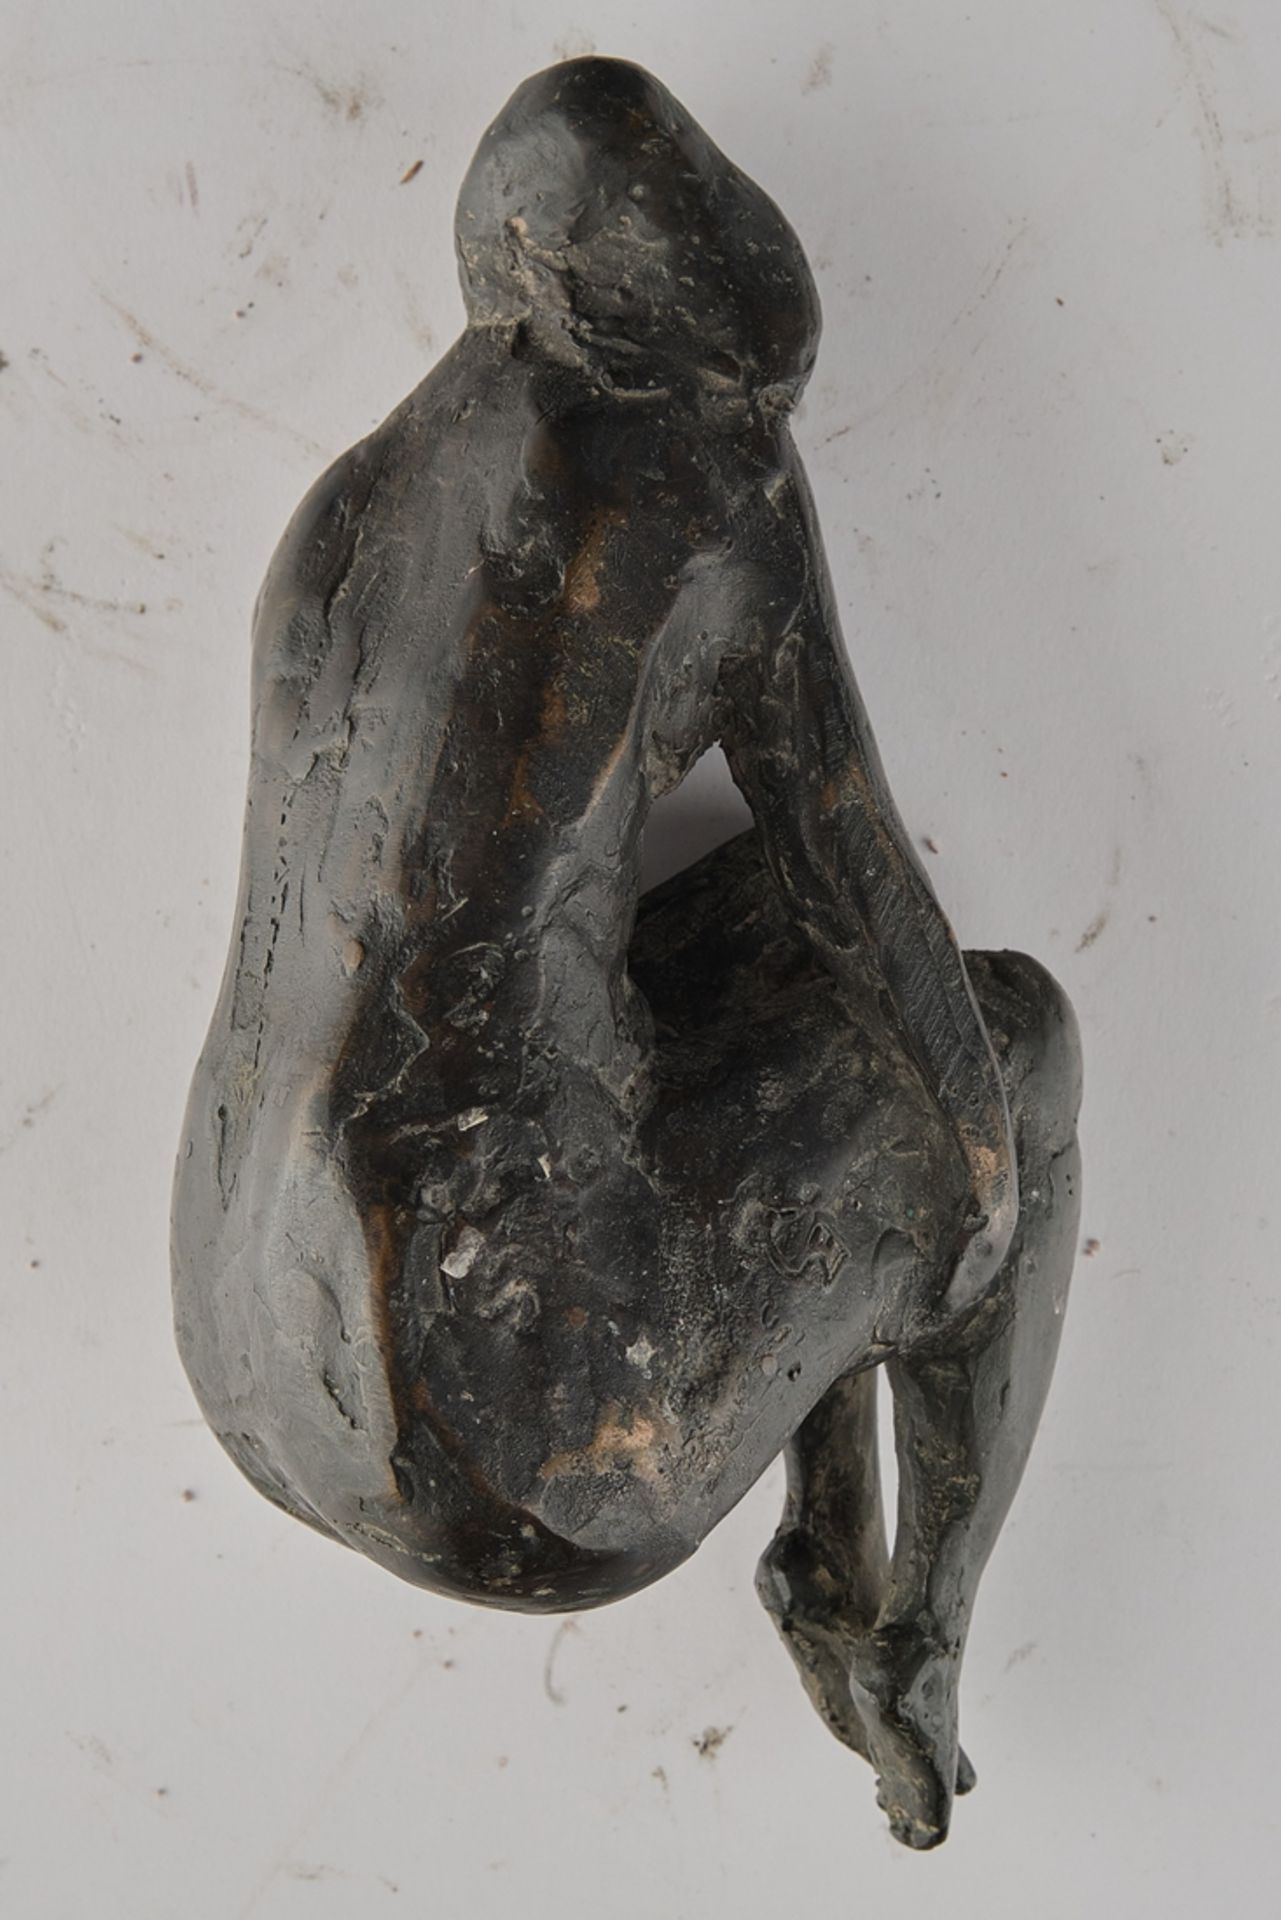 Bronze, "Liegender Akt", dunkel patiniert, 6 cm hoch - Bild 2 aus 2